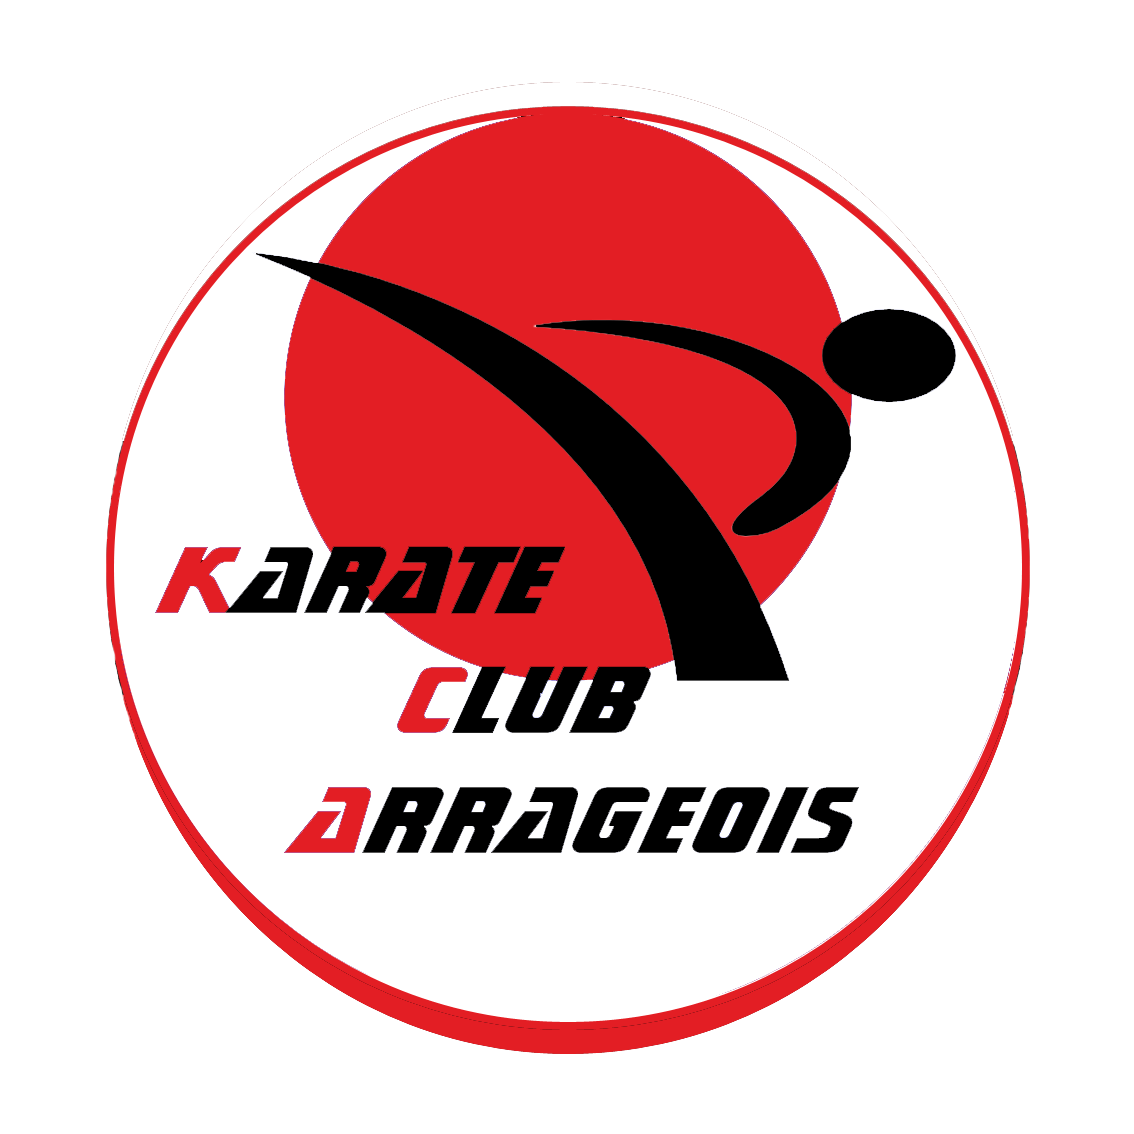 KARATE CLUB ARRAGEOIS